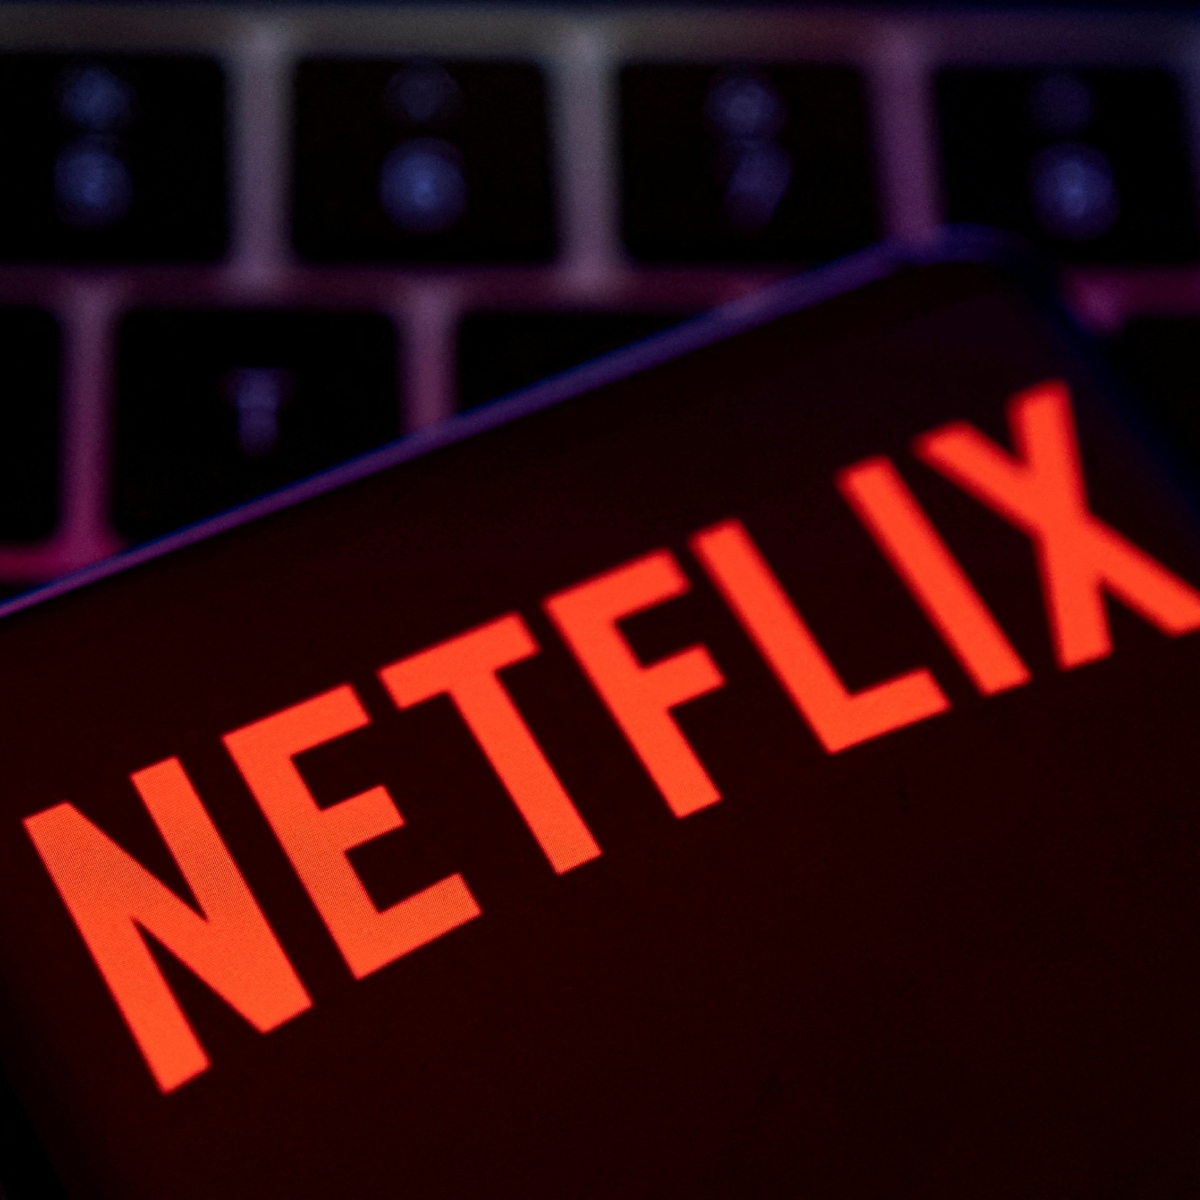 Netflix cancela plano básico a partir da próxima semana - RIC.com